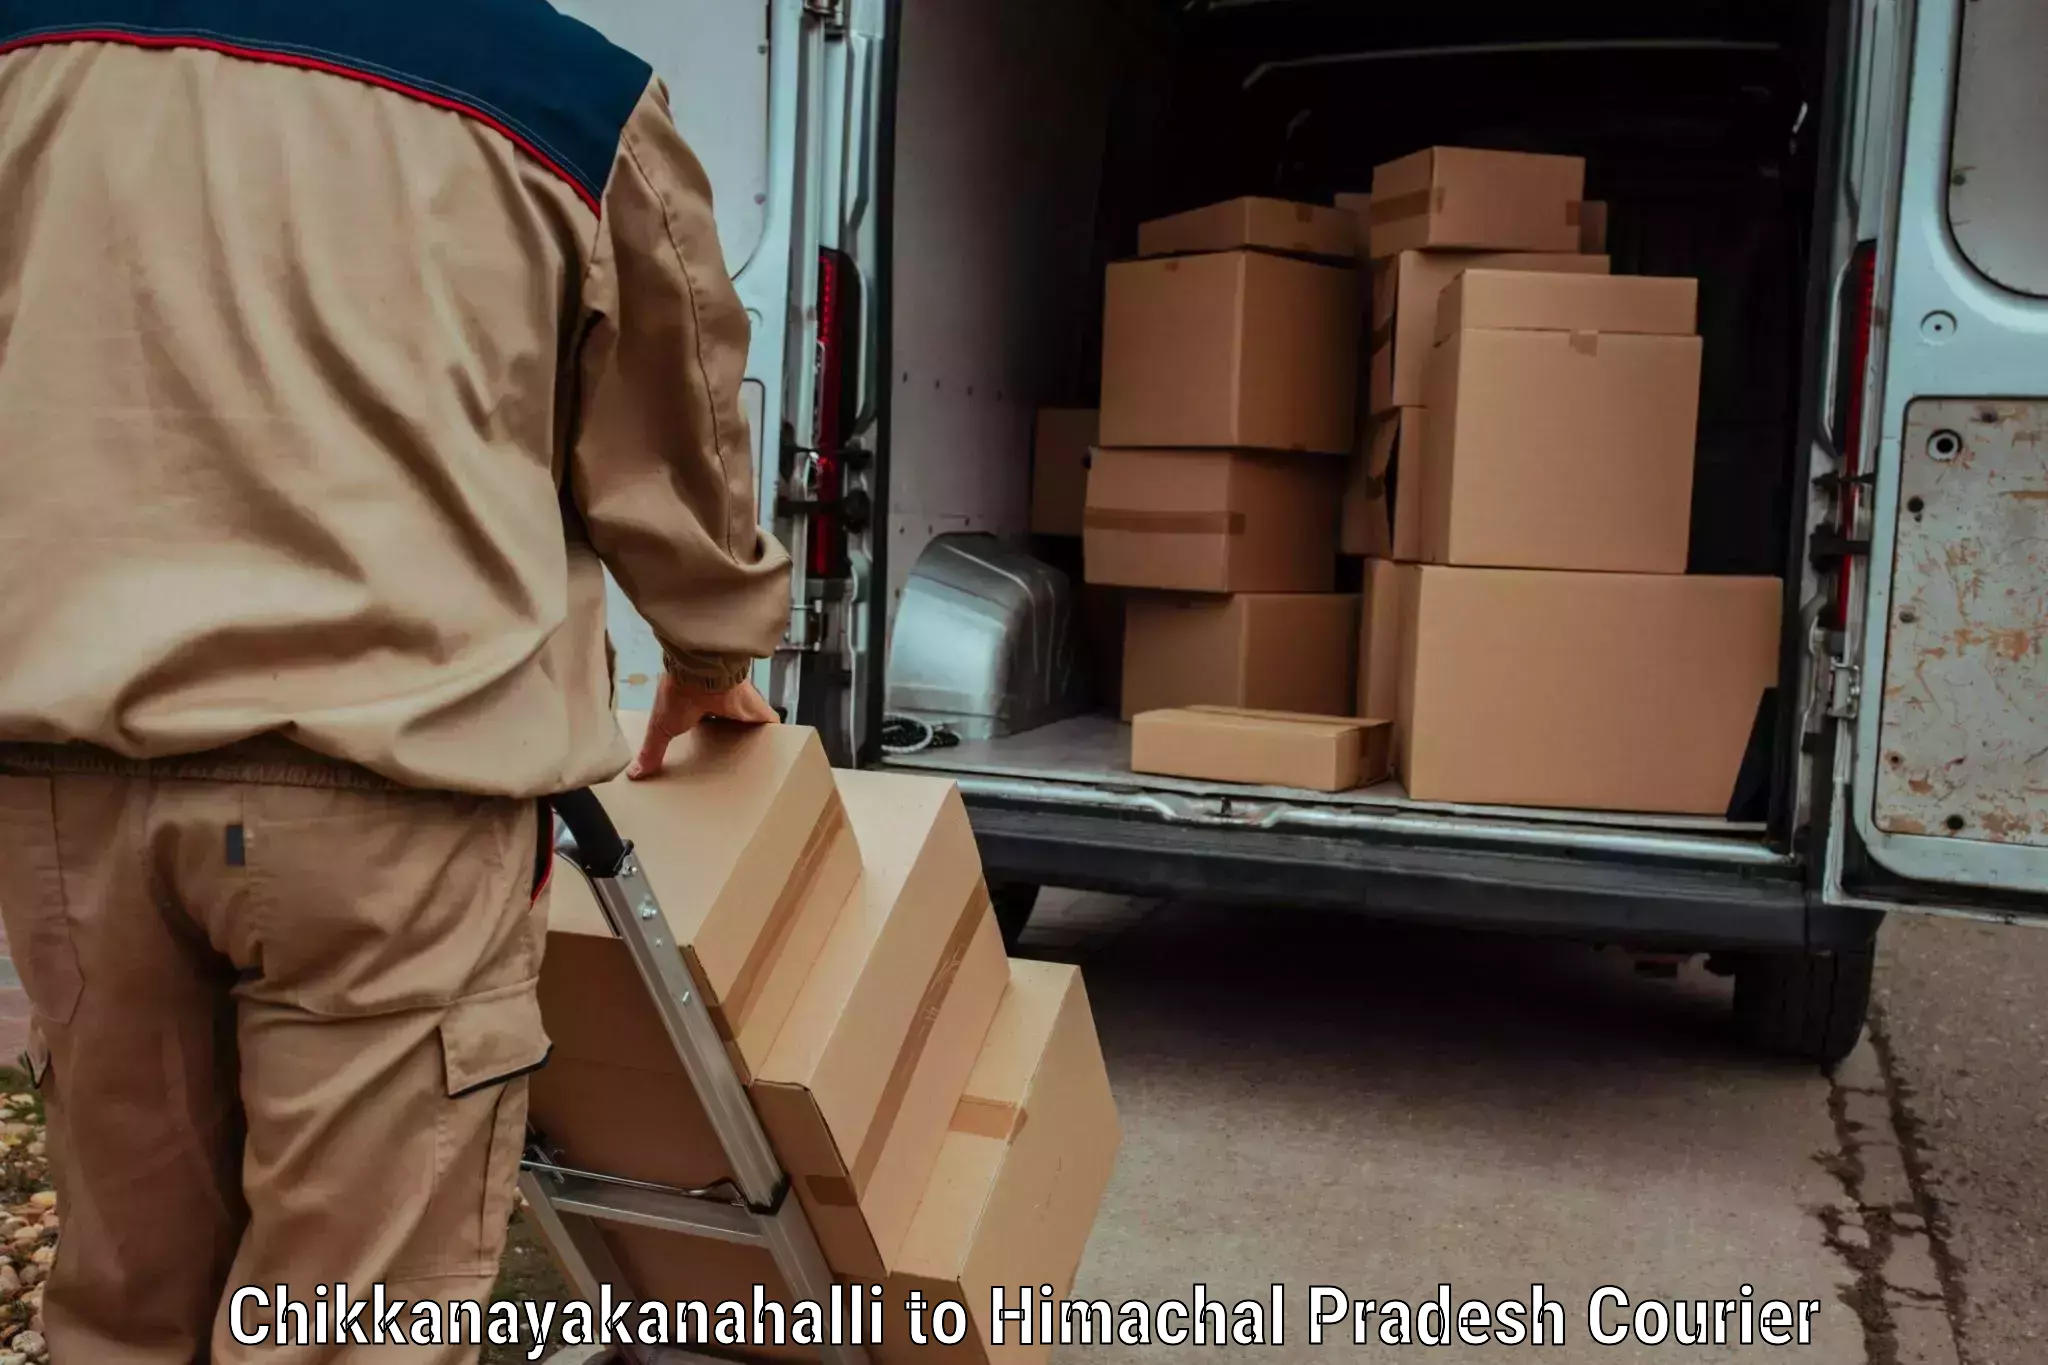 Efficient freight service Chikkanayakanahalli to Chintpurni